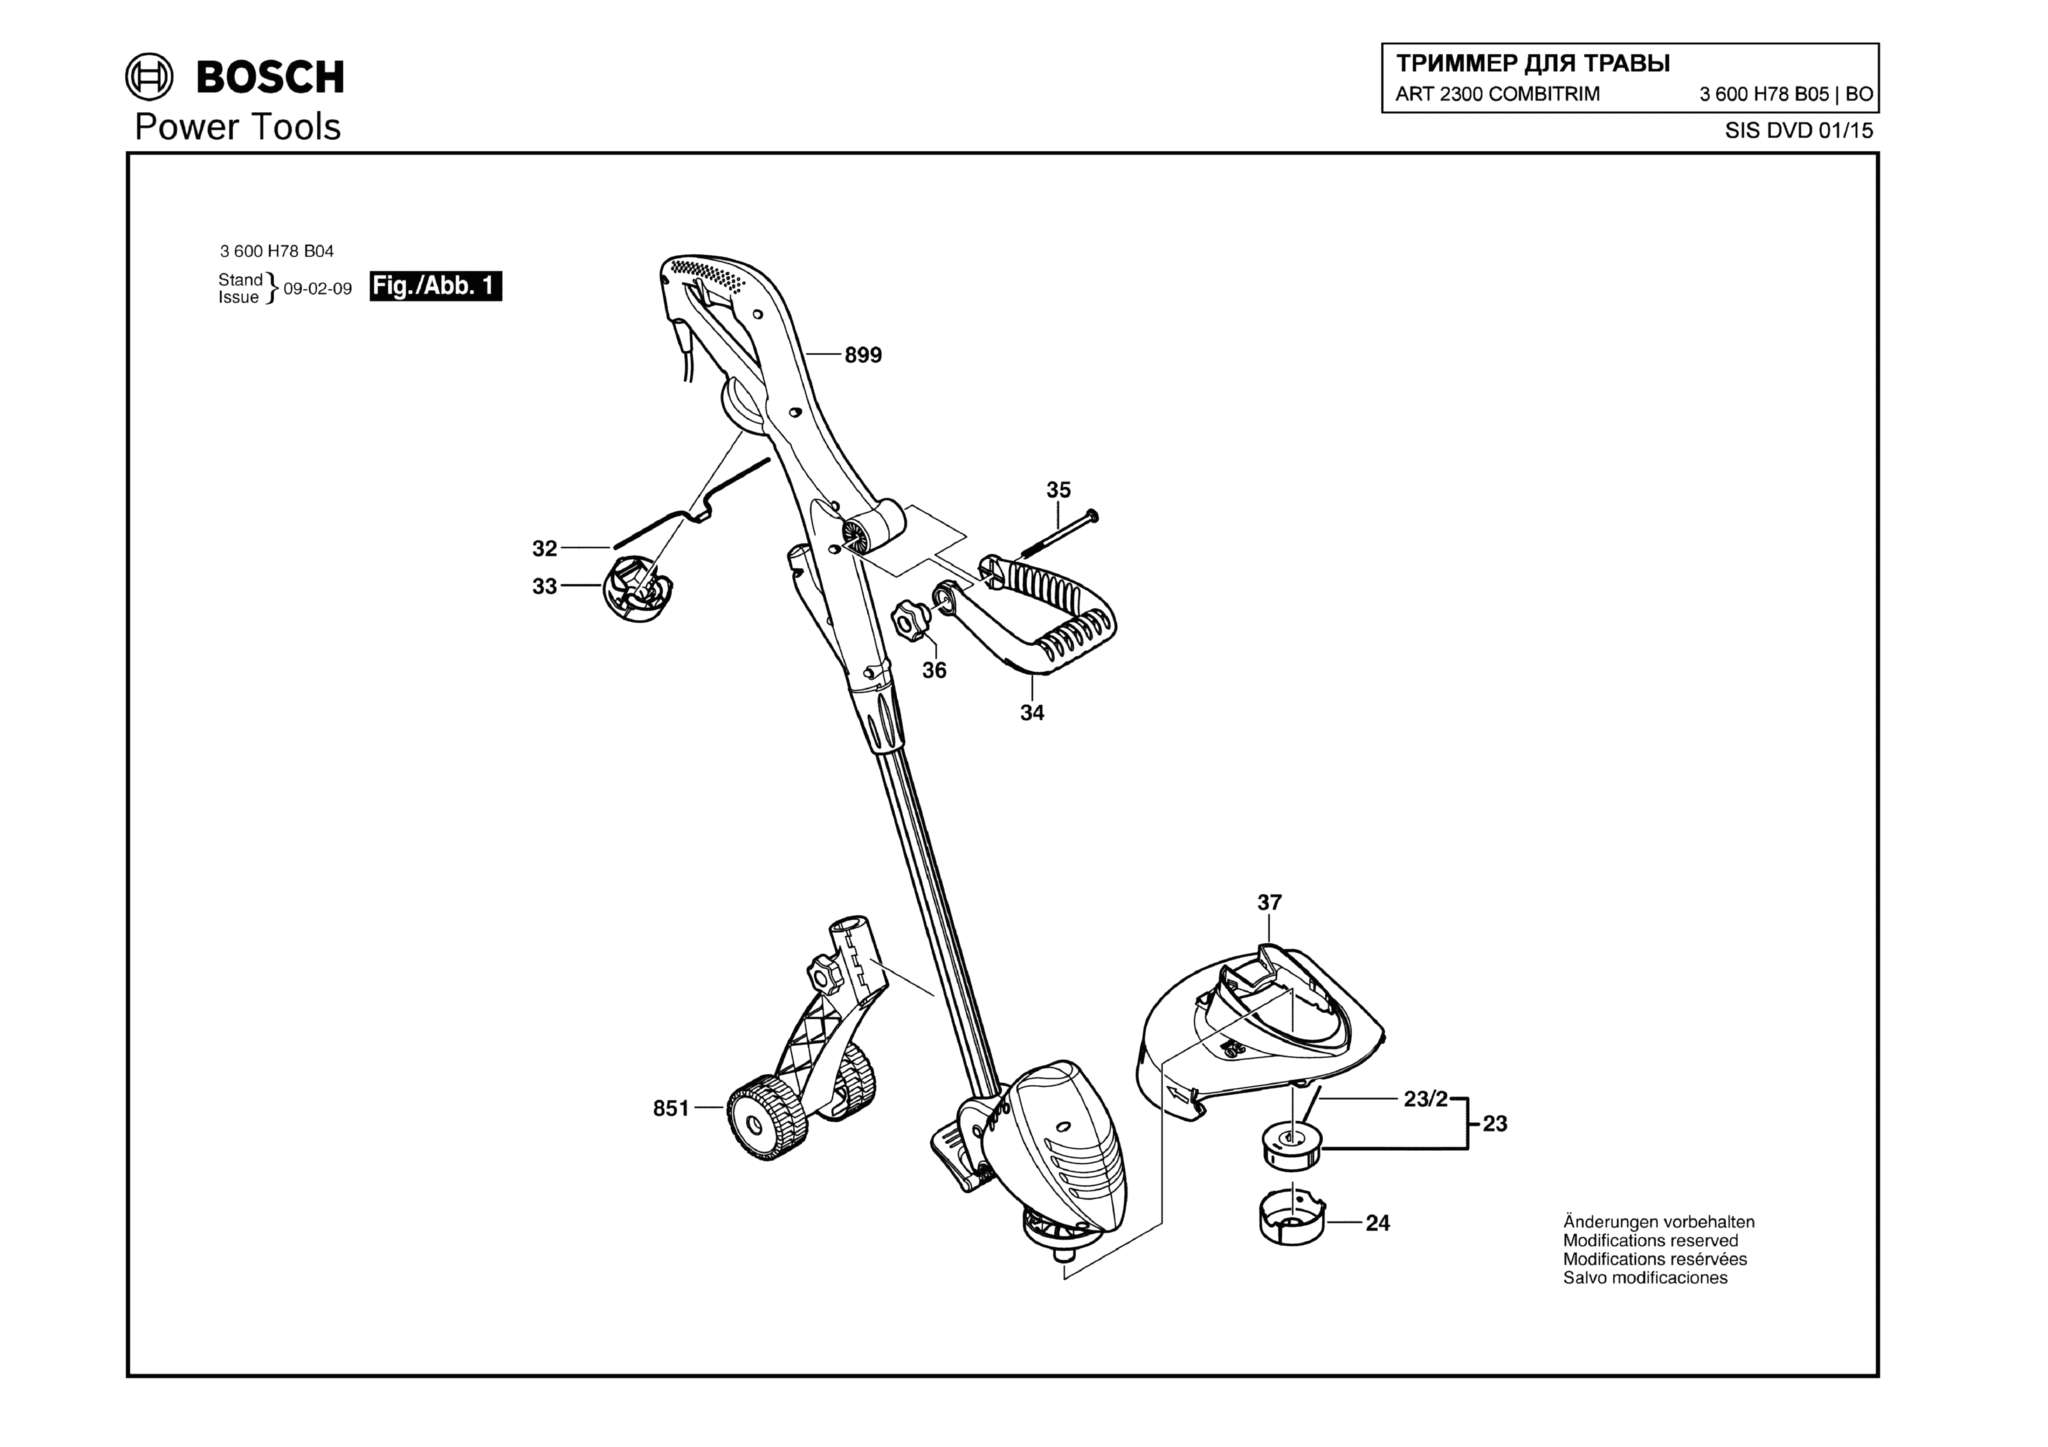 Запчасти, схема и деталировка Bosch ART 2300 COMBITRIM (ТИП 3600H78B05)